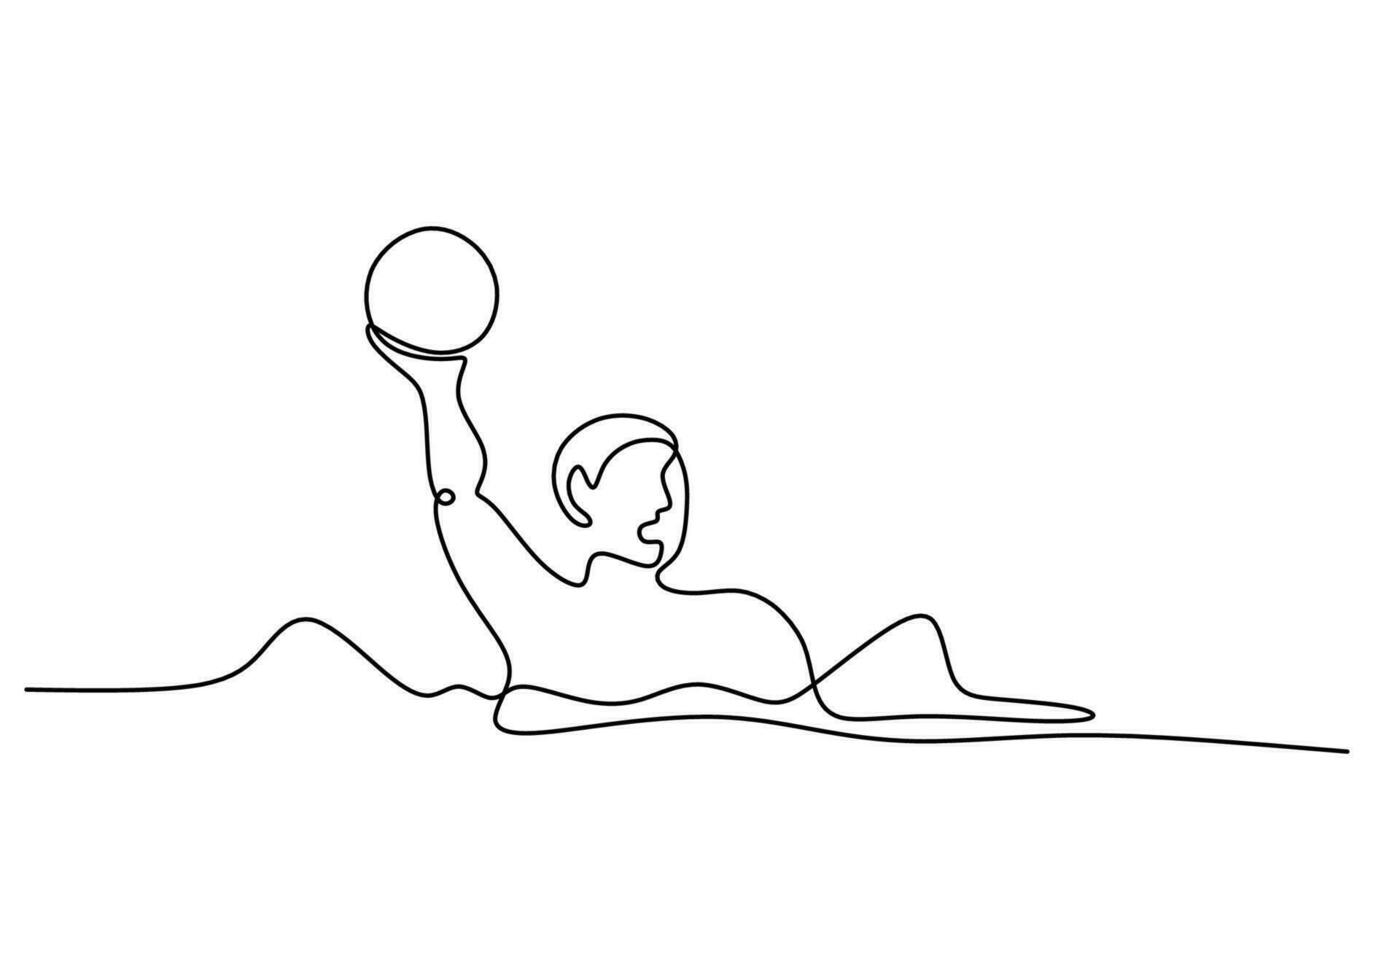 Wasser Polo Ball einer Linie Zeichnung kontinuierlich Hand gezeichnet Sport Thema vektor